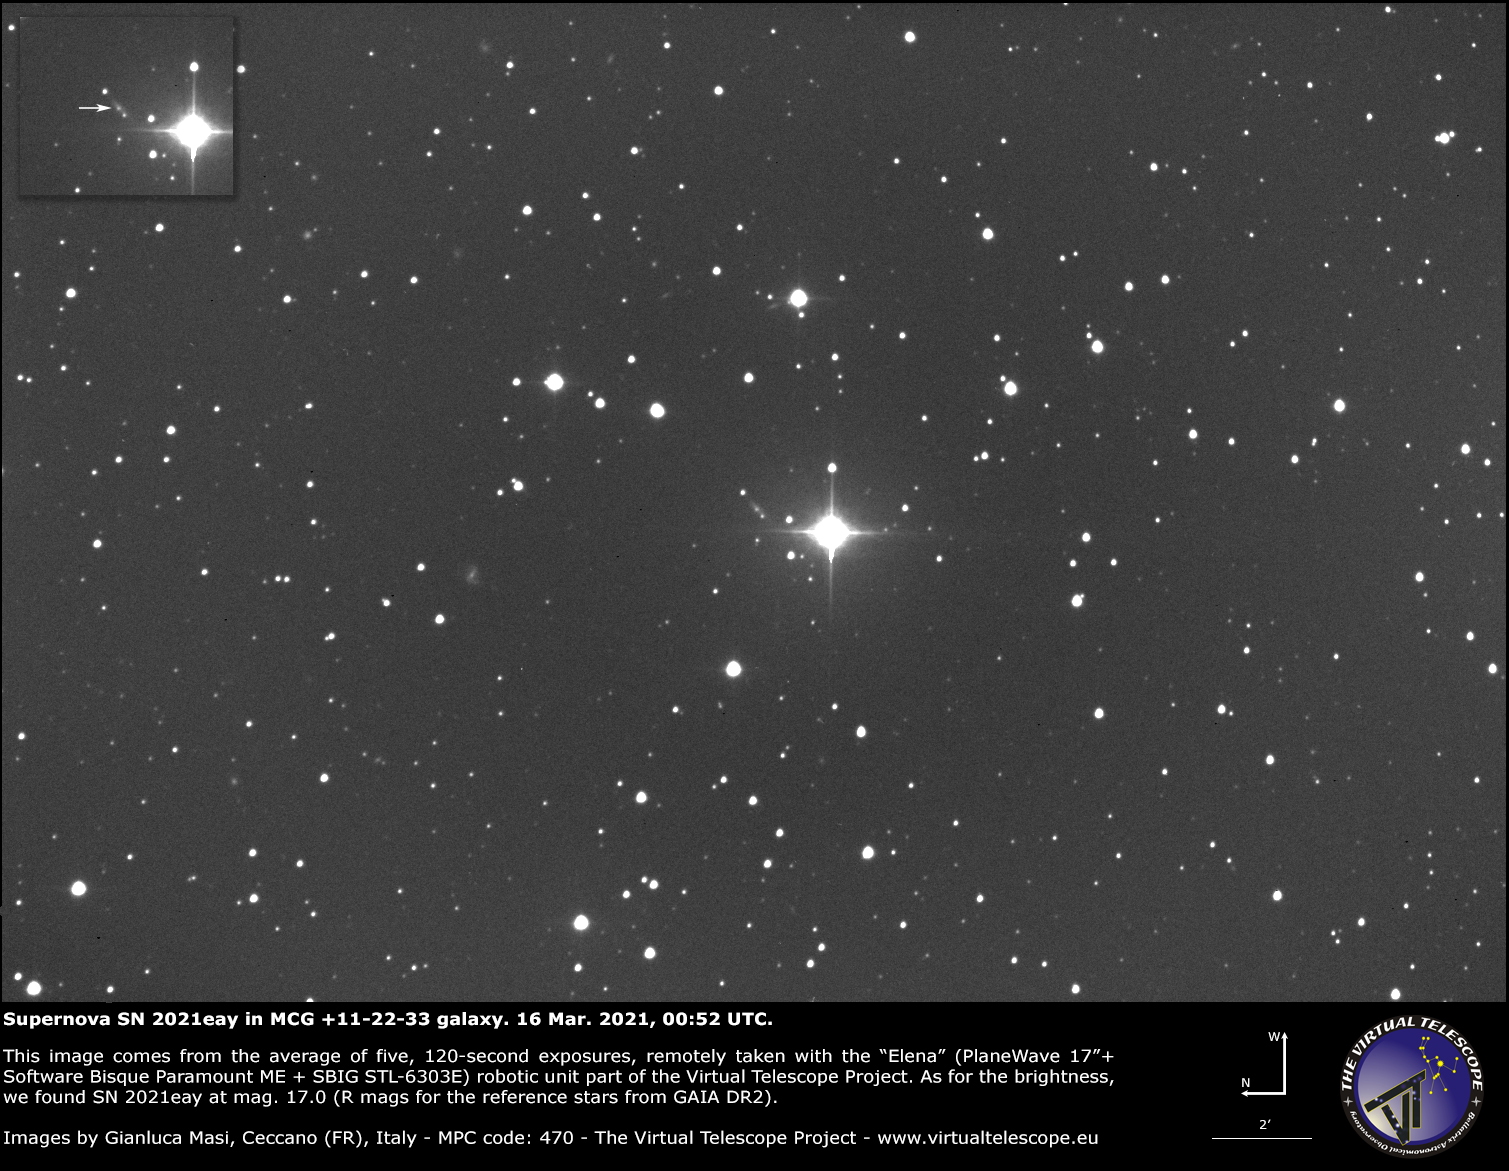 Supernova SN 2021eay in MCG +11-22-33 galaxy: 16 Mar. 2021.